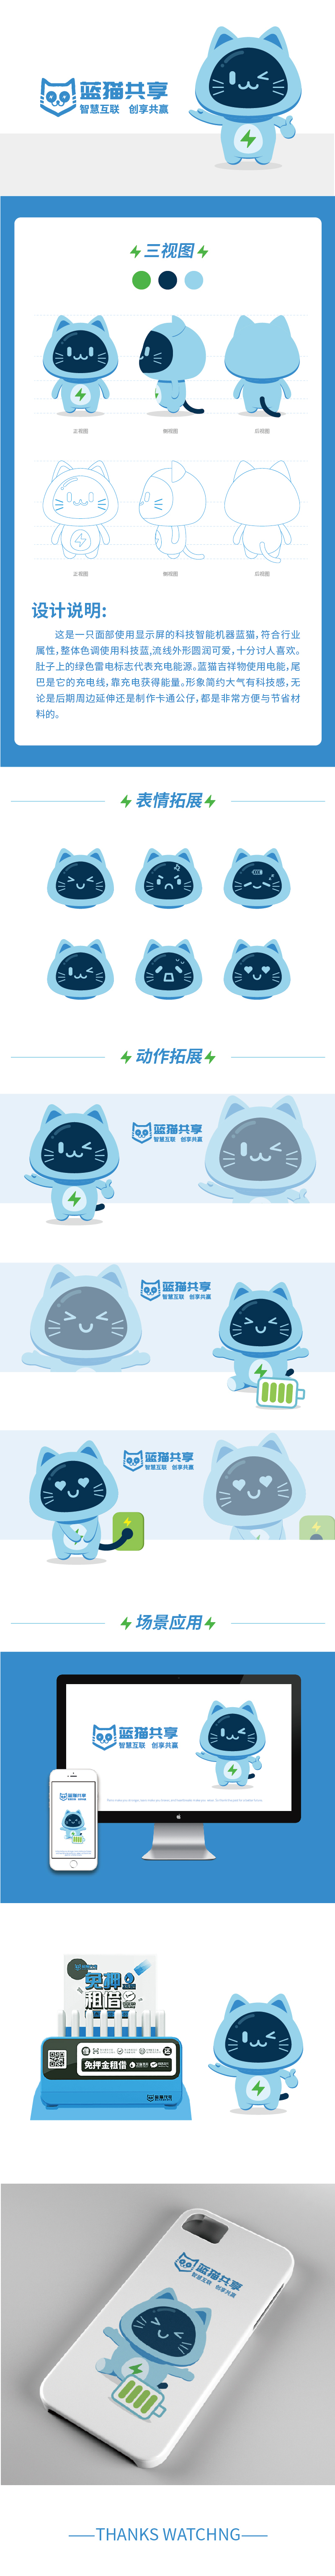 蓝猫共享吉祥物设计图0